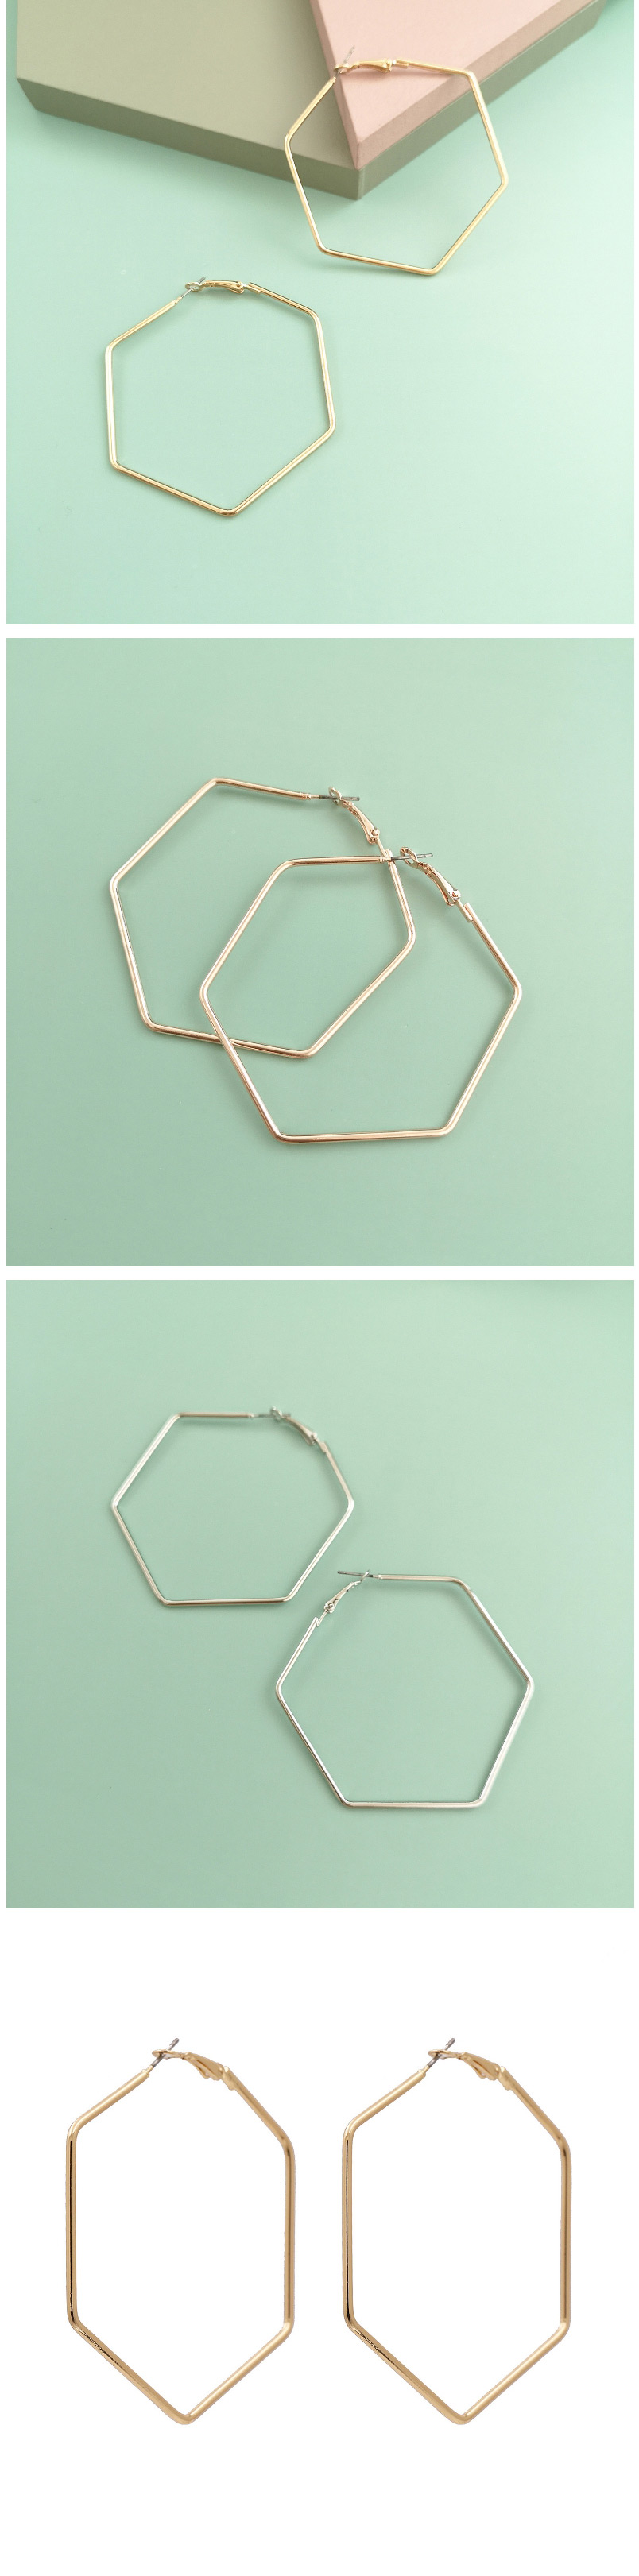 Fashion Hexagon Silver Polygonal Geometric Stars Love Alloy Earrings,Stud Earrings